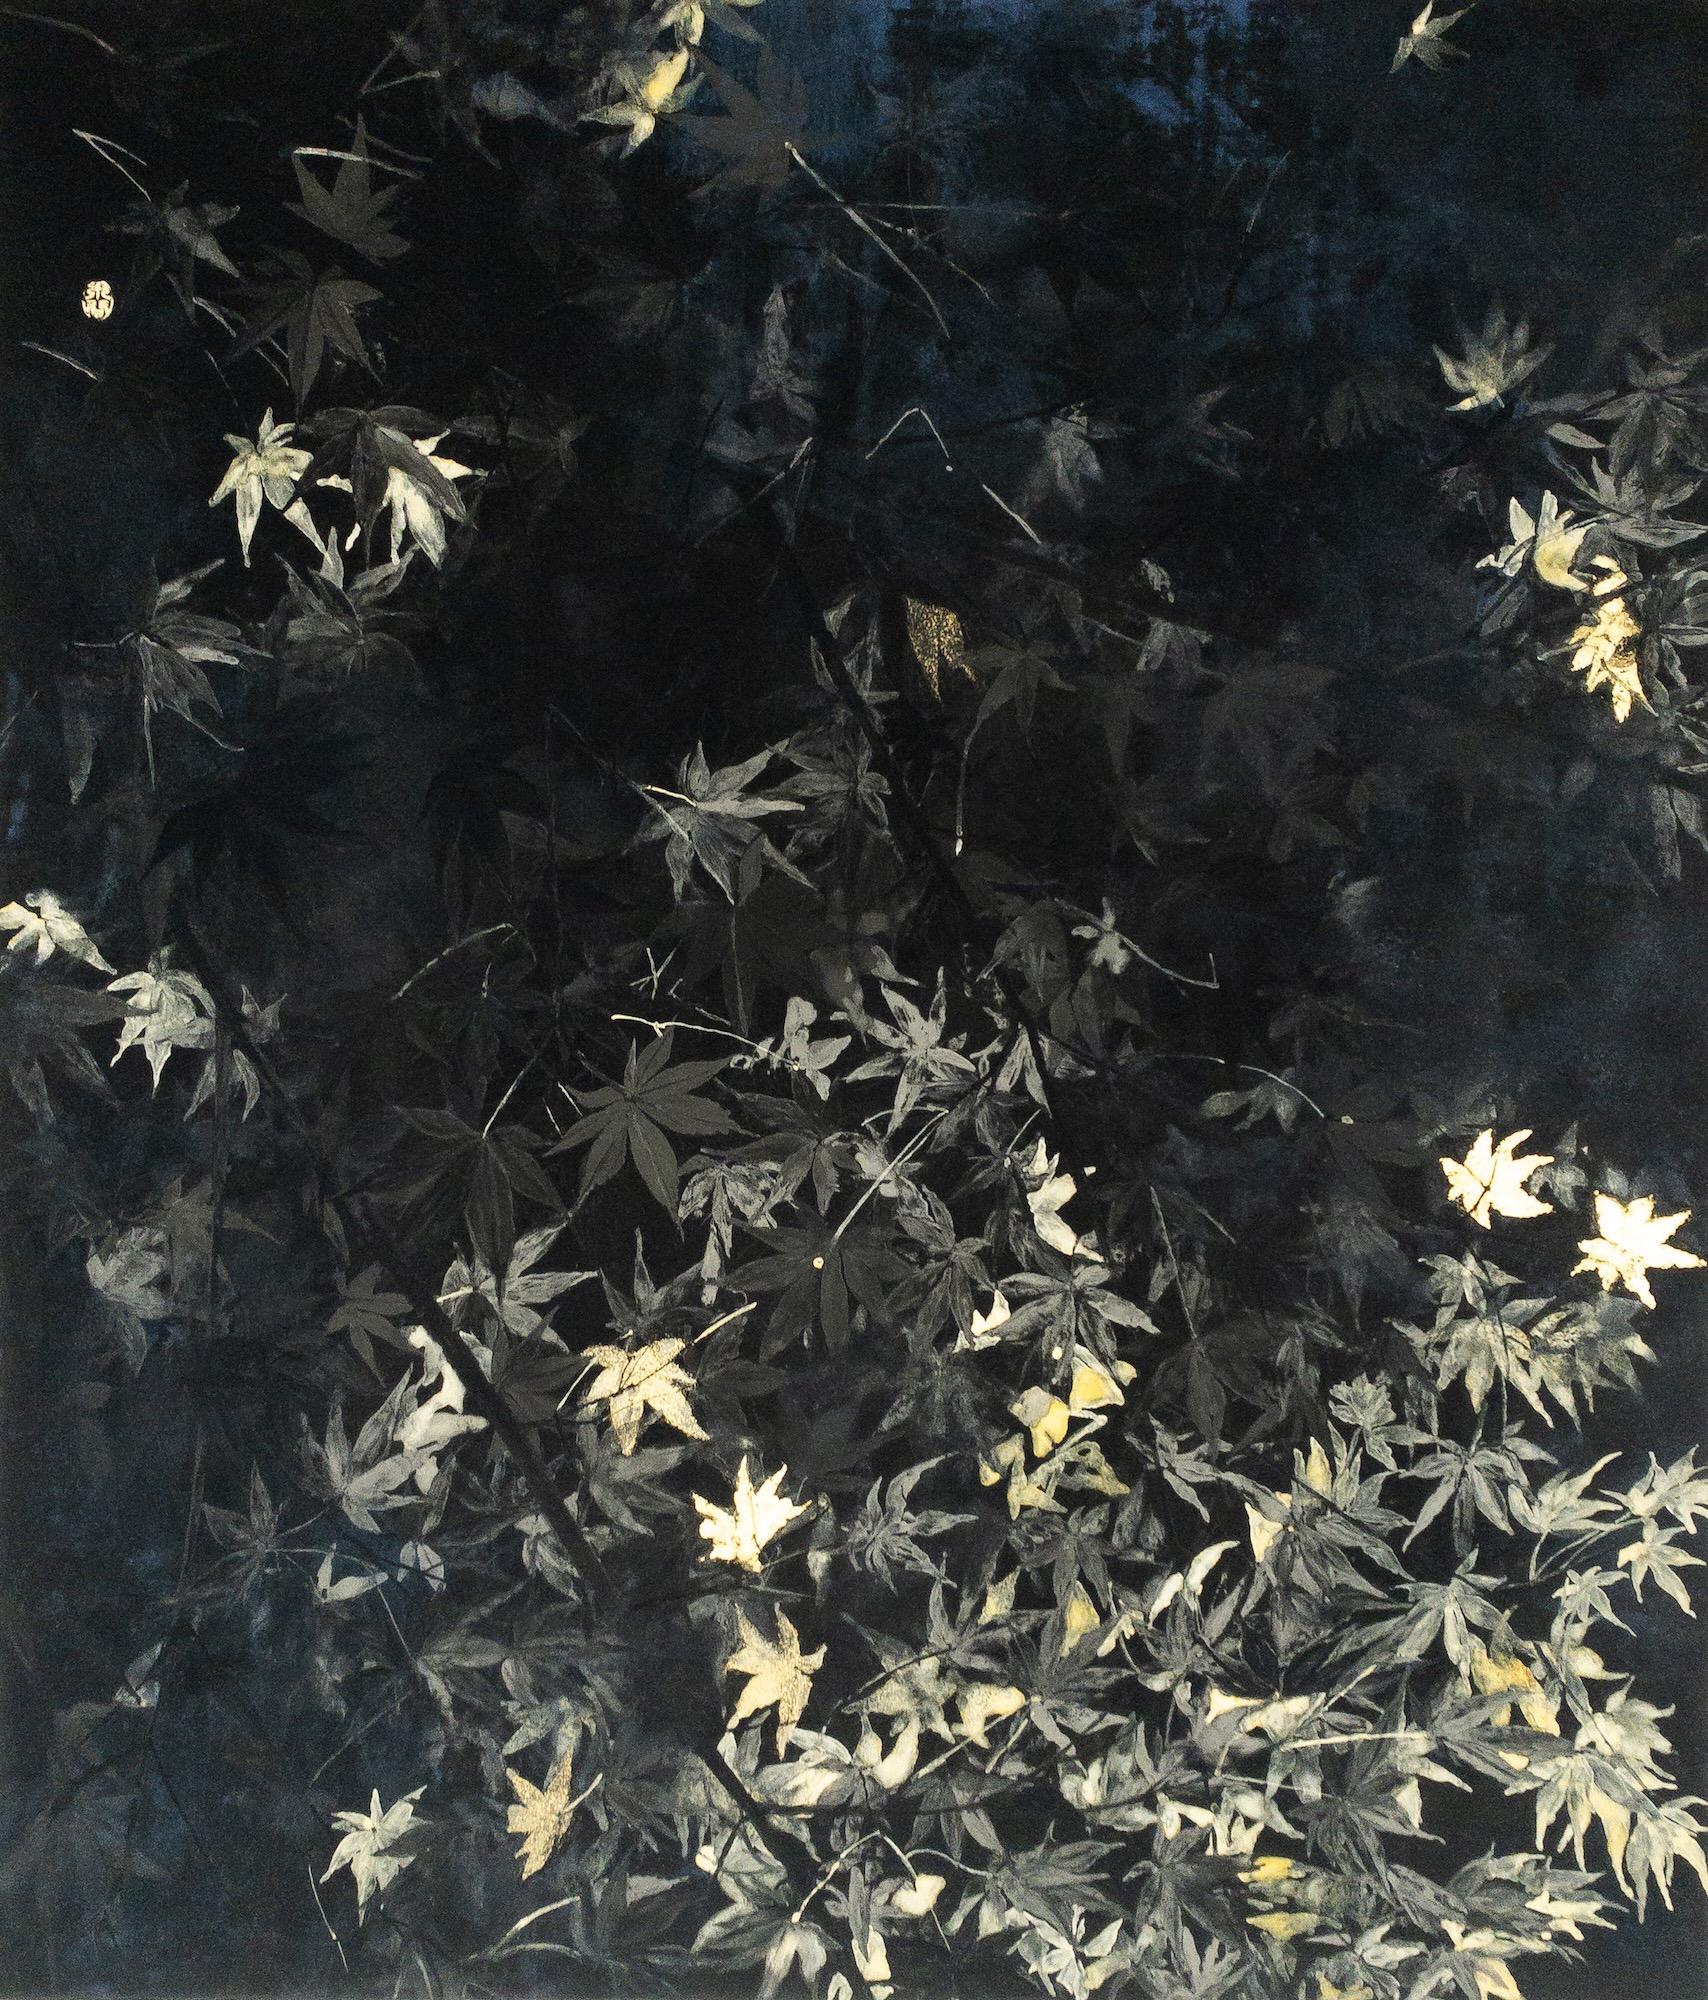 Nocturn V (2023) è un dipinto dell'artista contemporanea franco-giapponese Lumi Mizutani. 
Pigmenti, foglia d'oro su carta giapponese montata su pannello, 53 × 45,5 cm.
In questa serie di dipinti figurativi, Lumi Mizutani rende omaggio al Giappone e